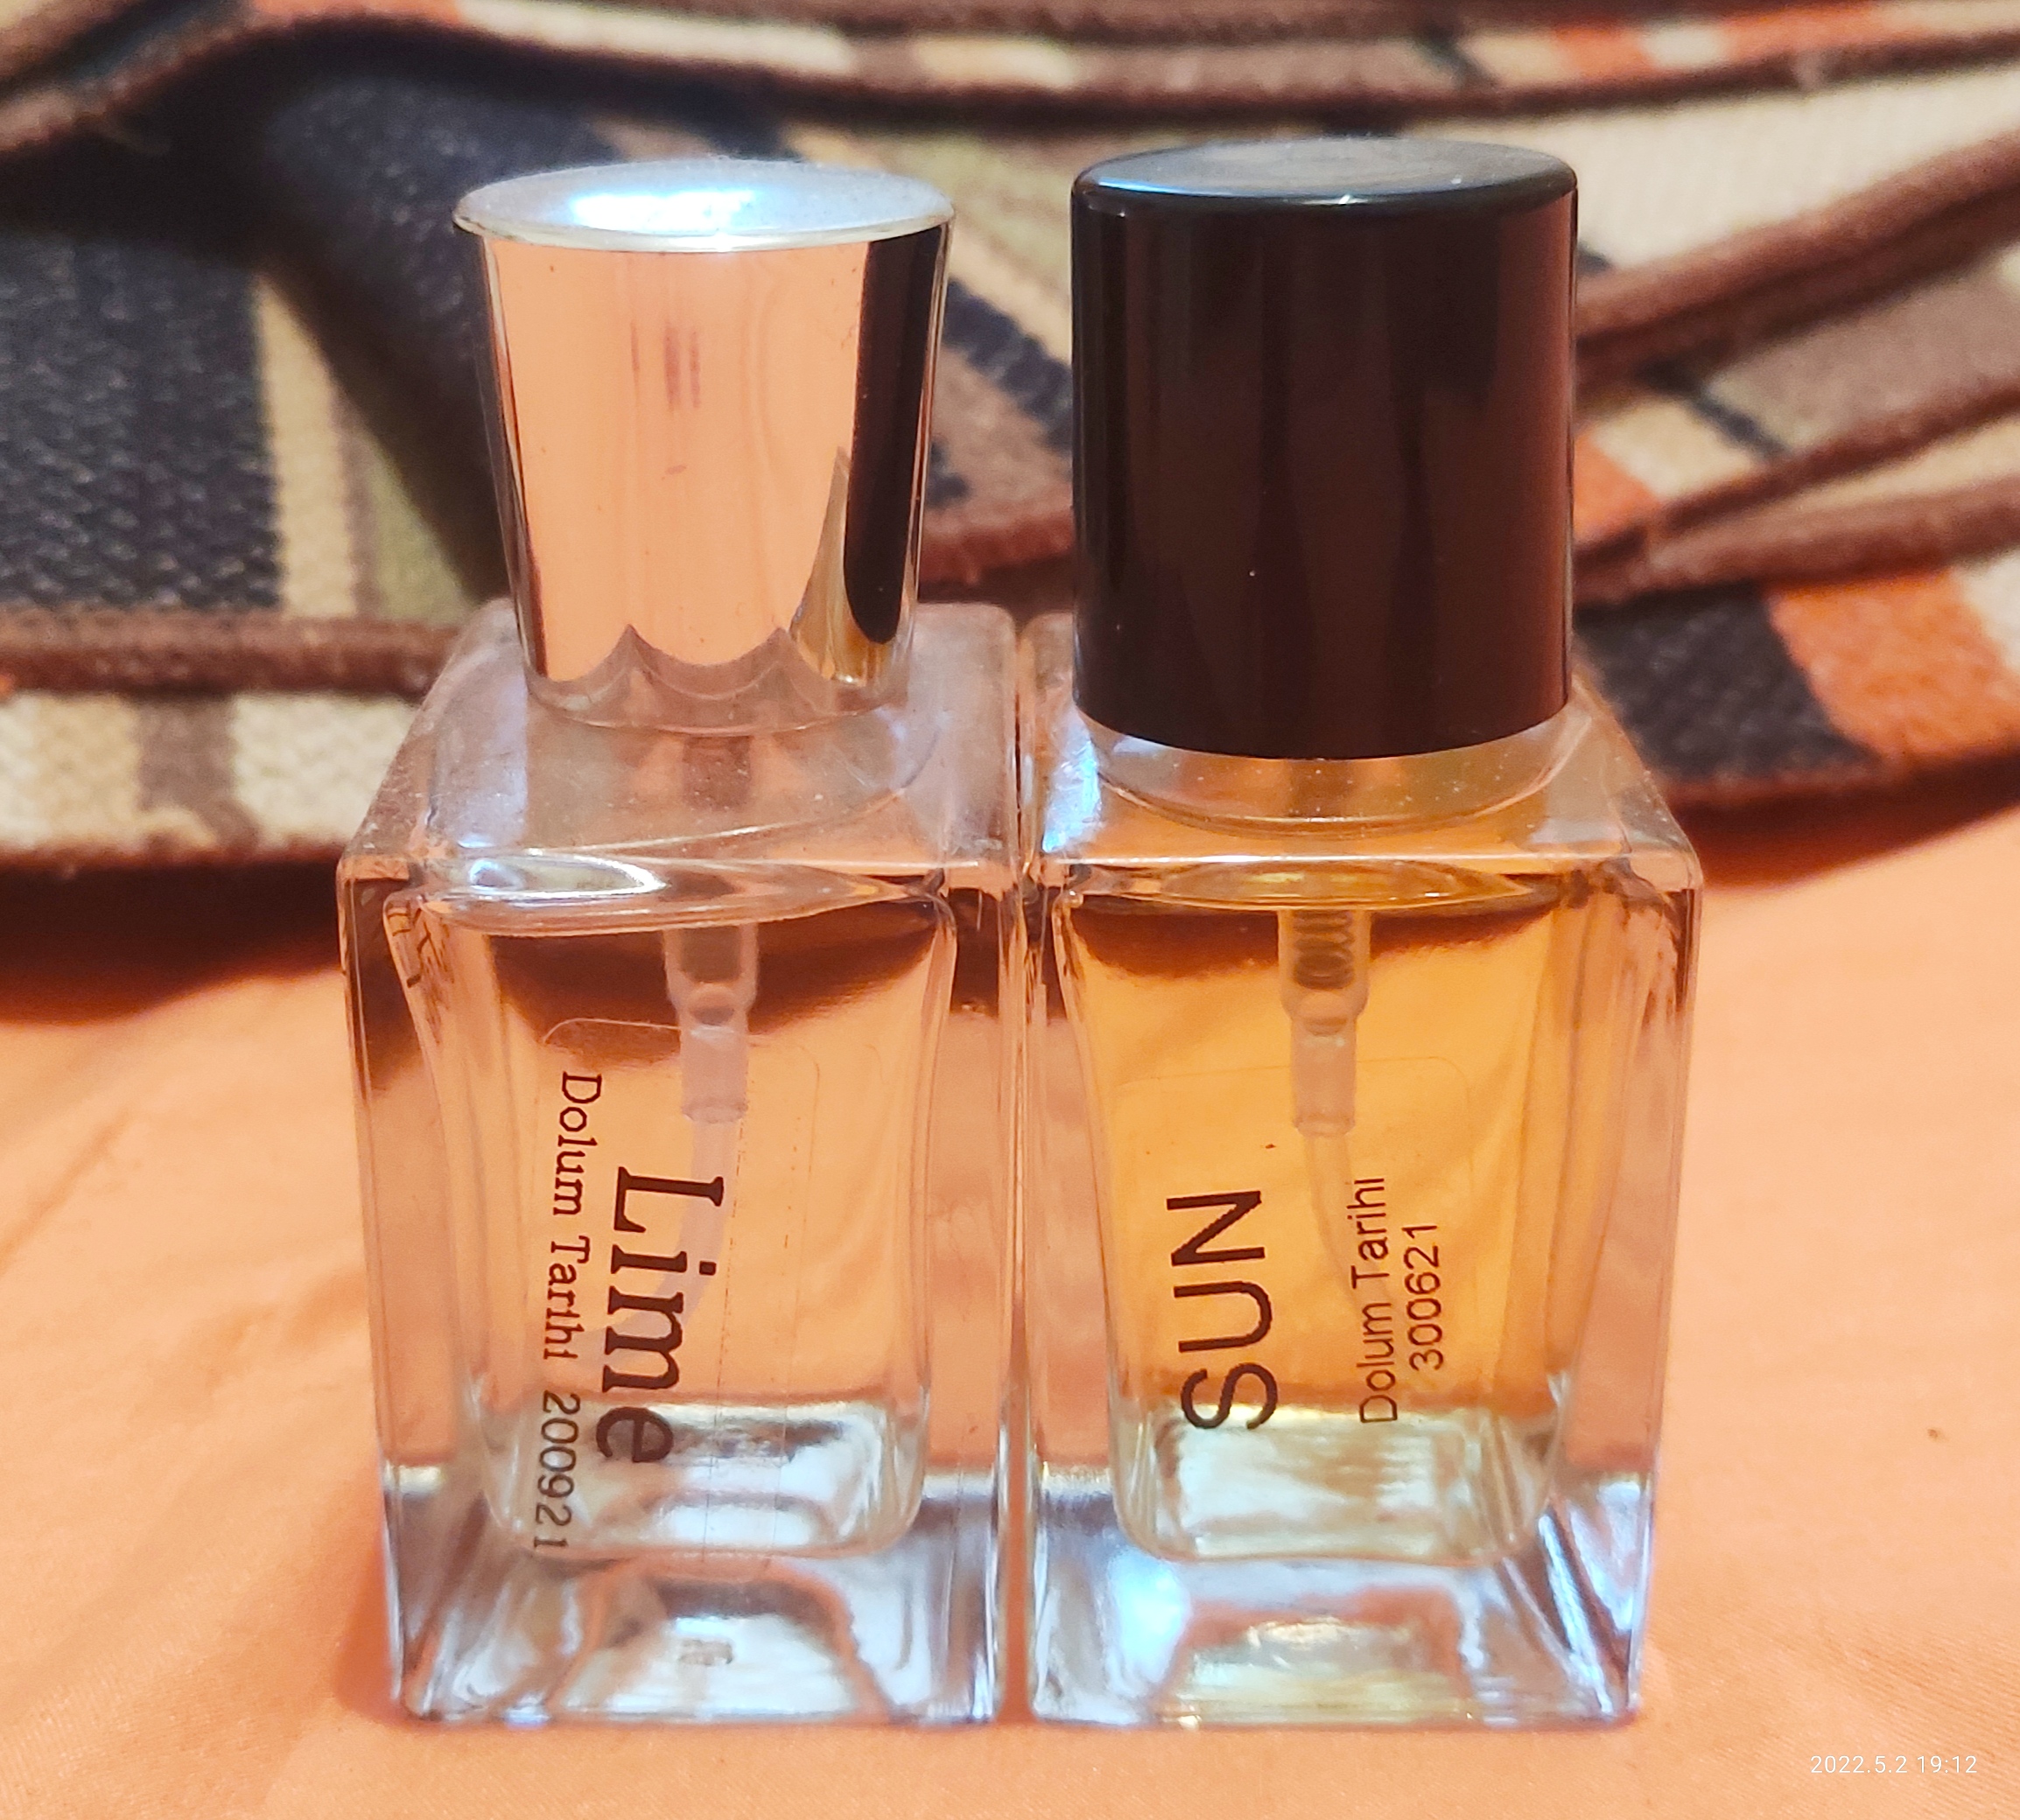 3 adet Tutaste parfüm 200 TL ya da takaslık | DonanımHaber Forum